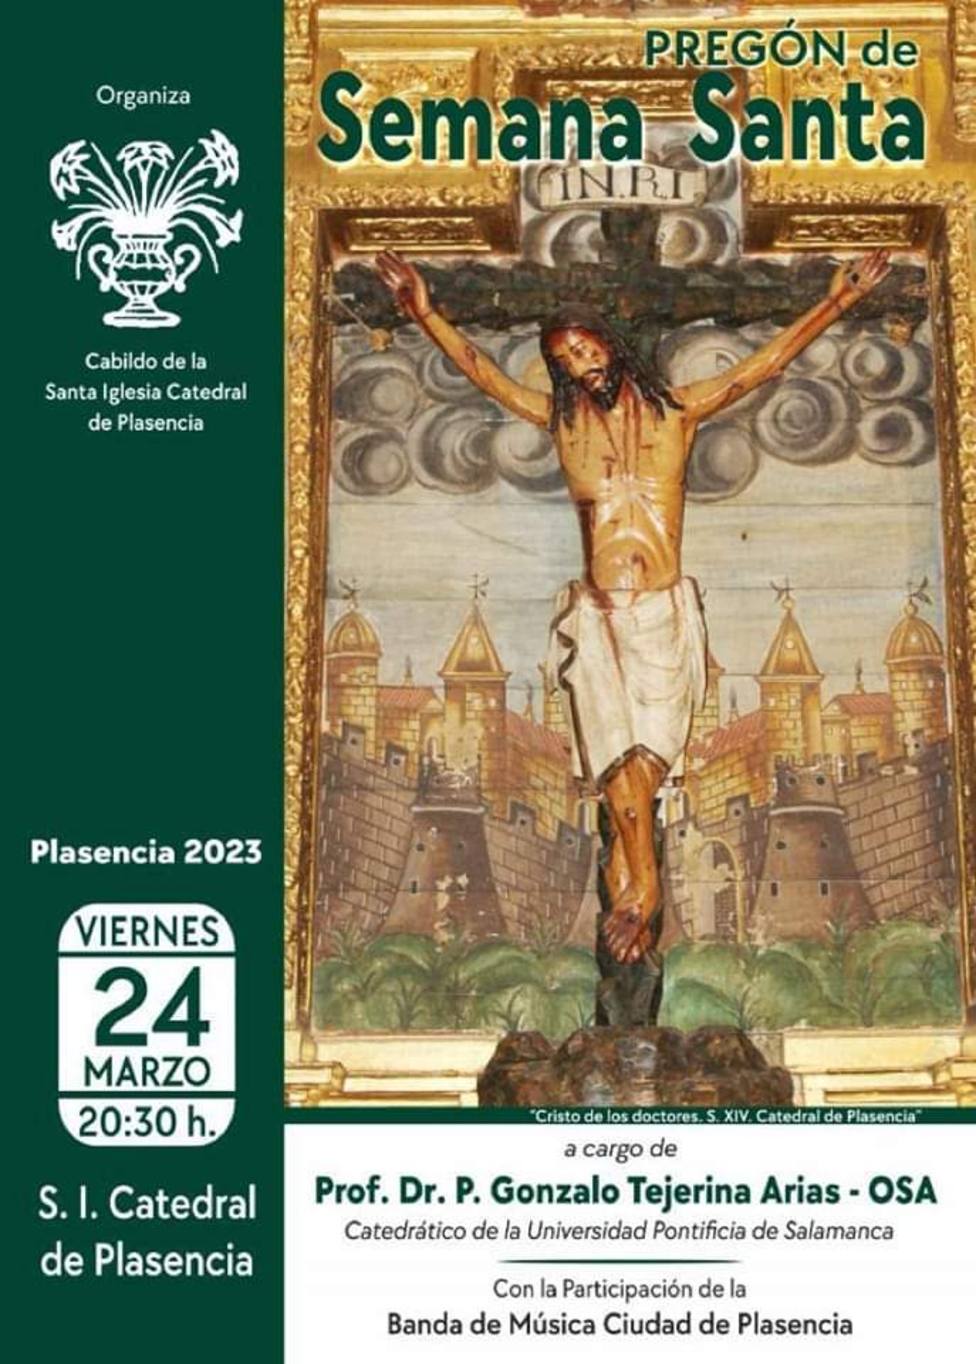 ctv-r9r-pregon-semana-santa-plasencia-2023